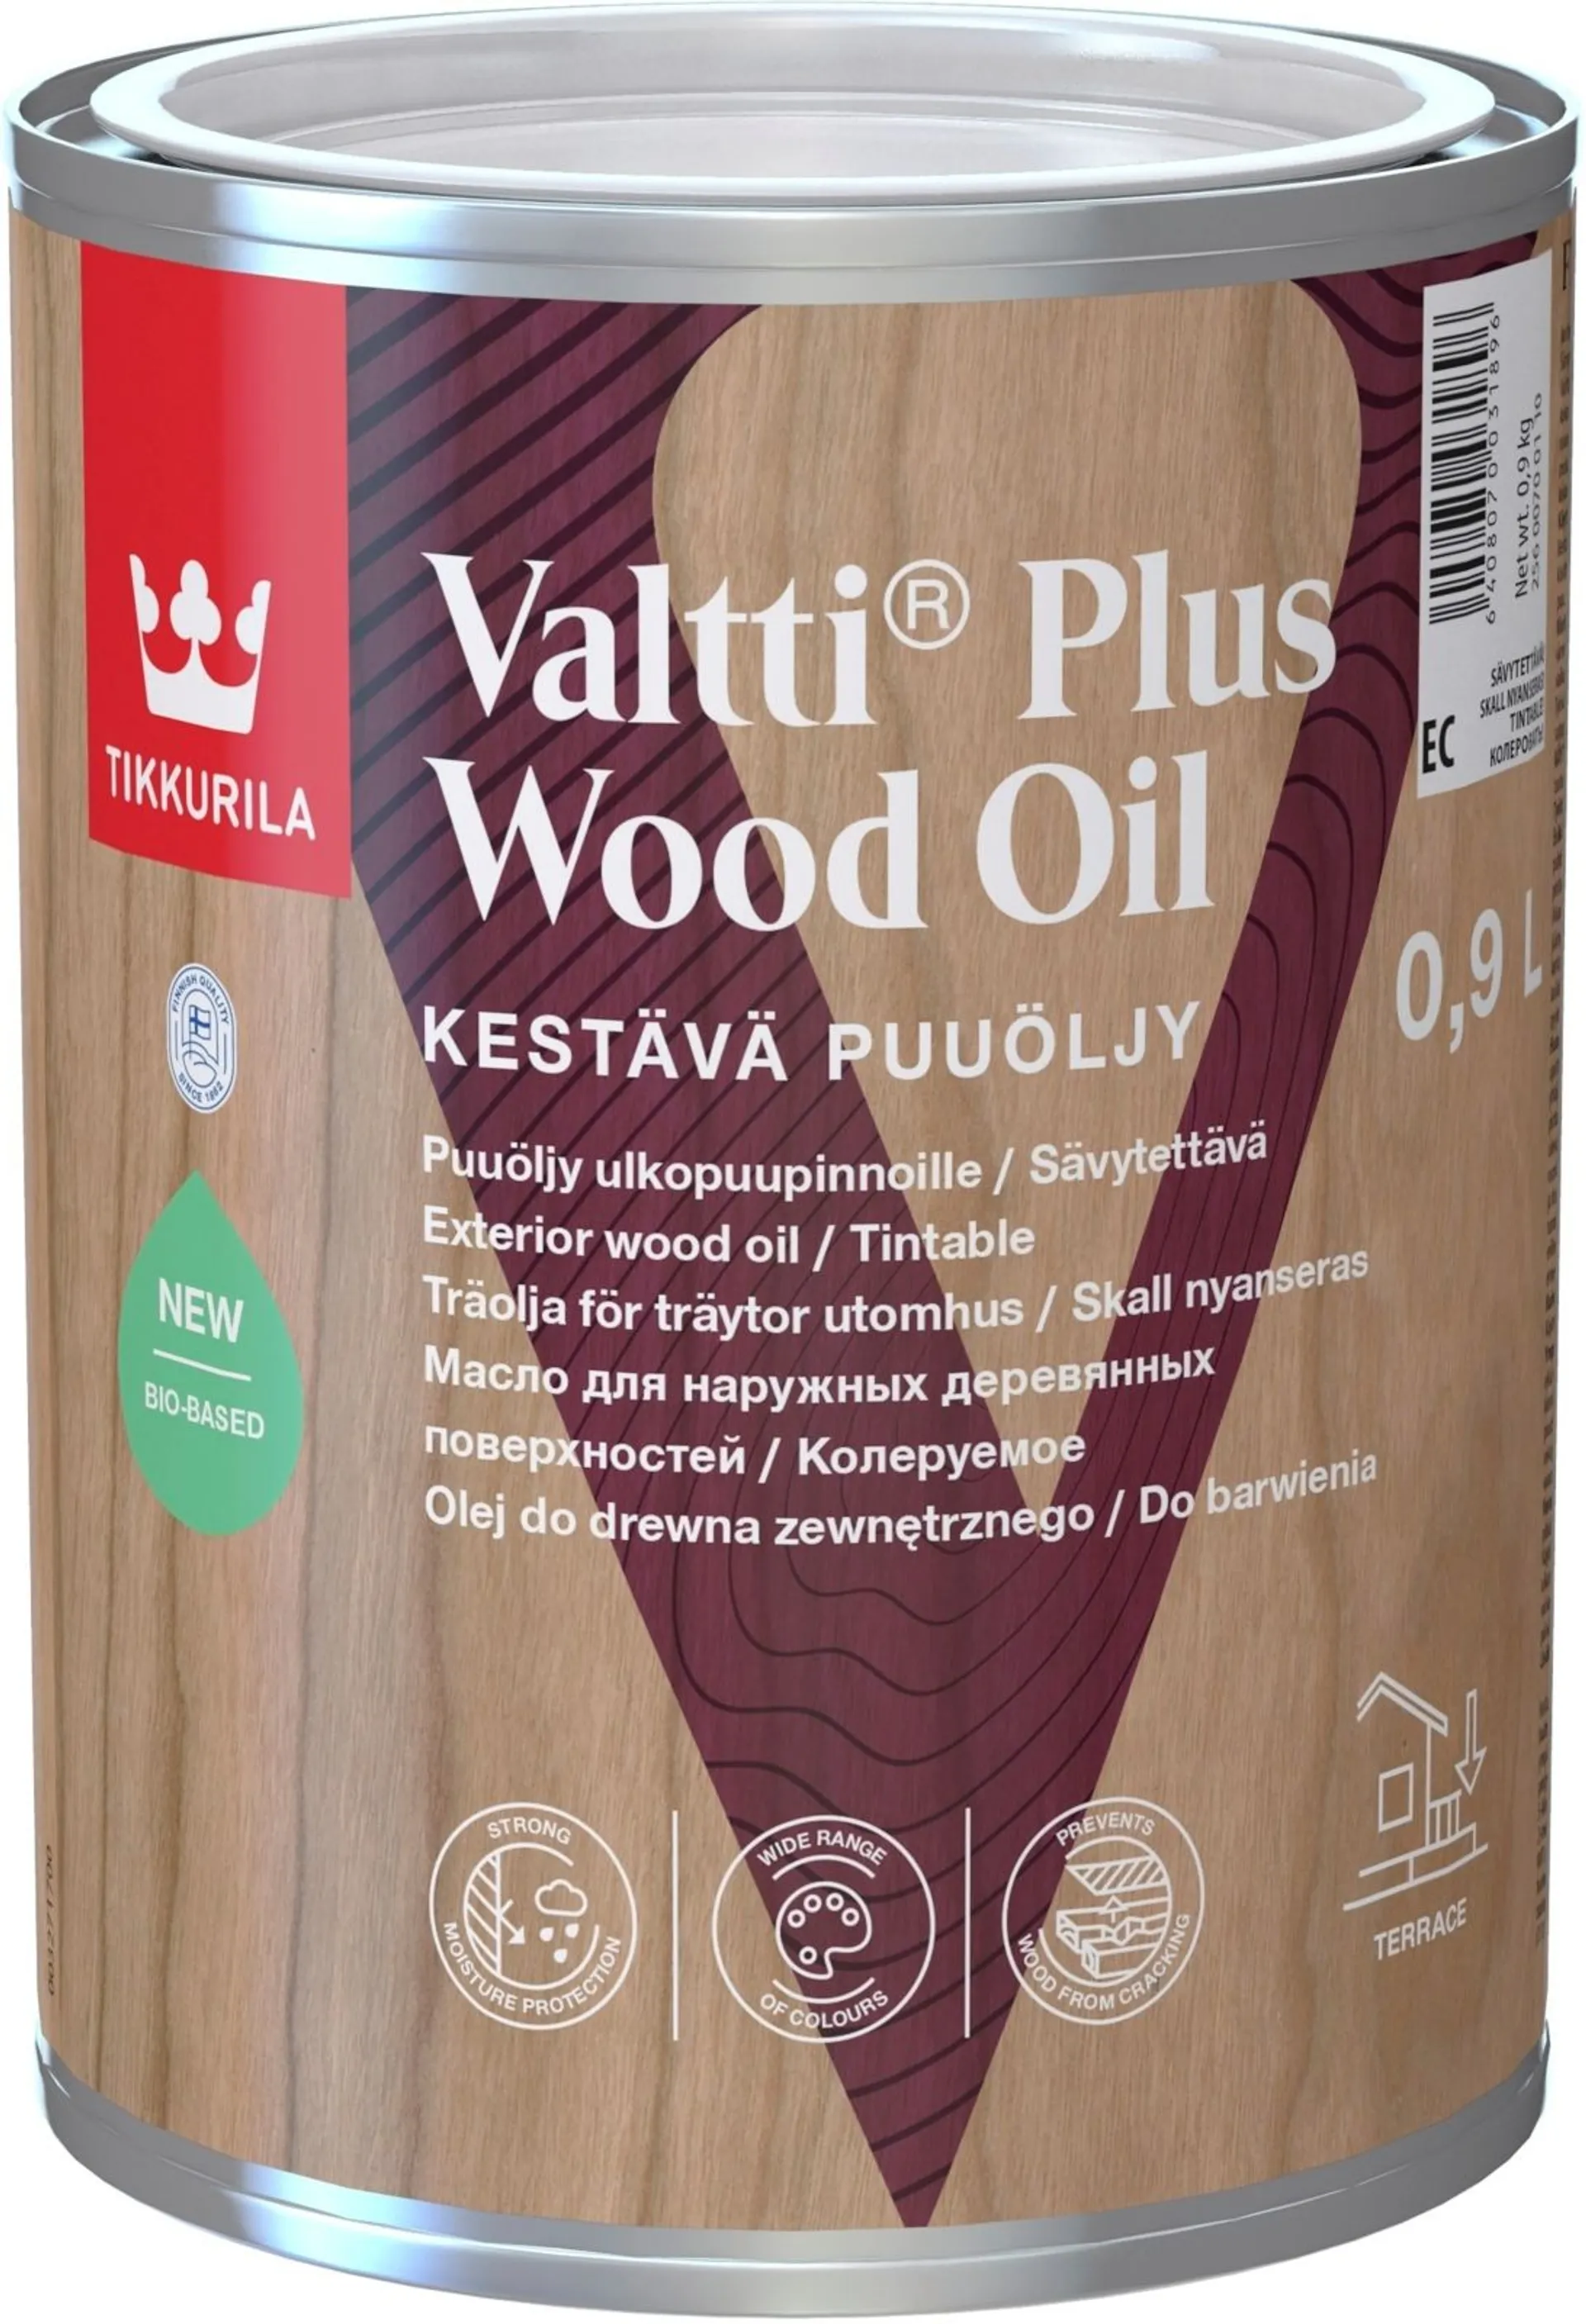 Tikkurila Valtti Plus Wood Oil 0,9l EC sävytettävä puuöljy ulkokäyttöön